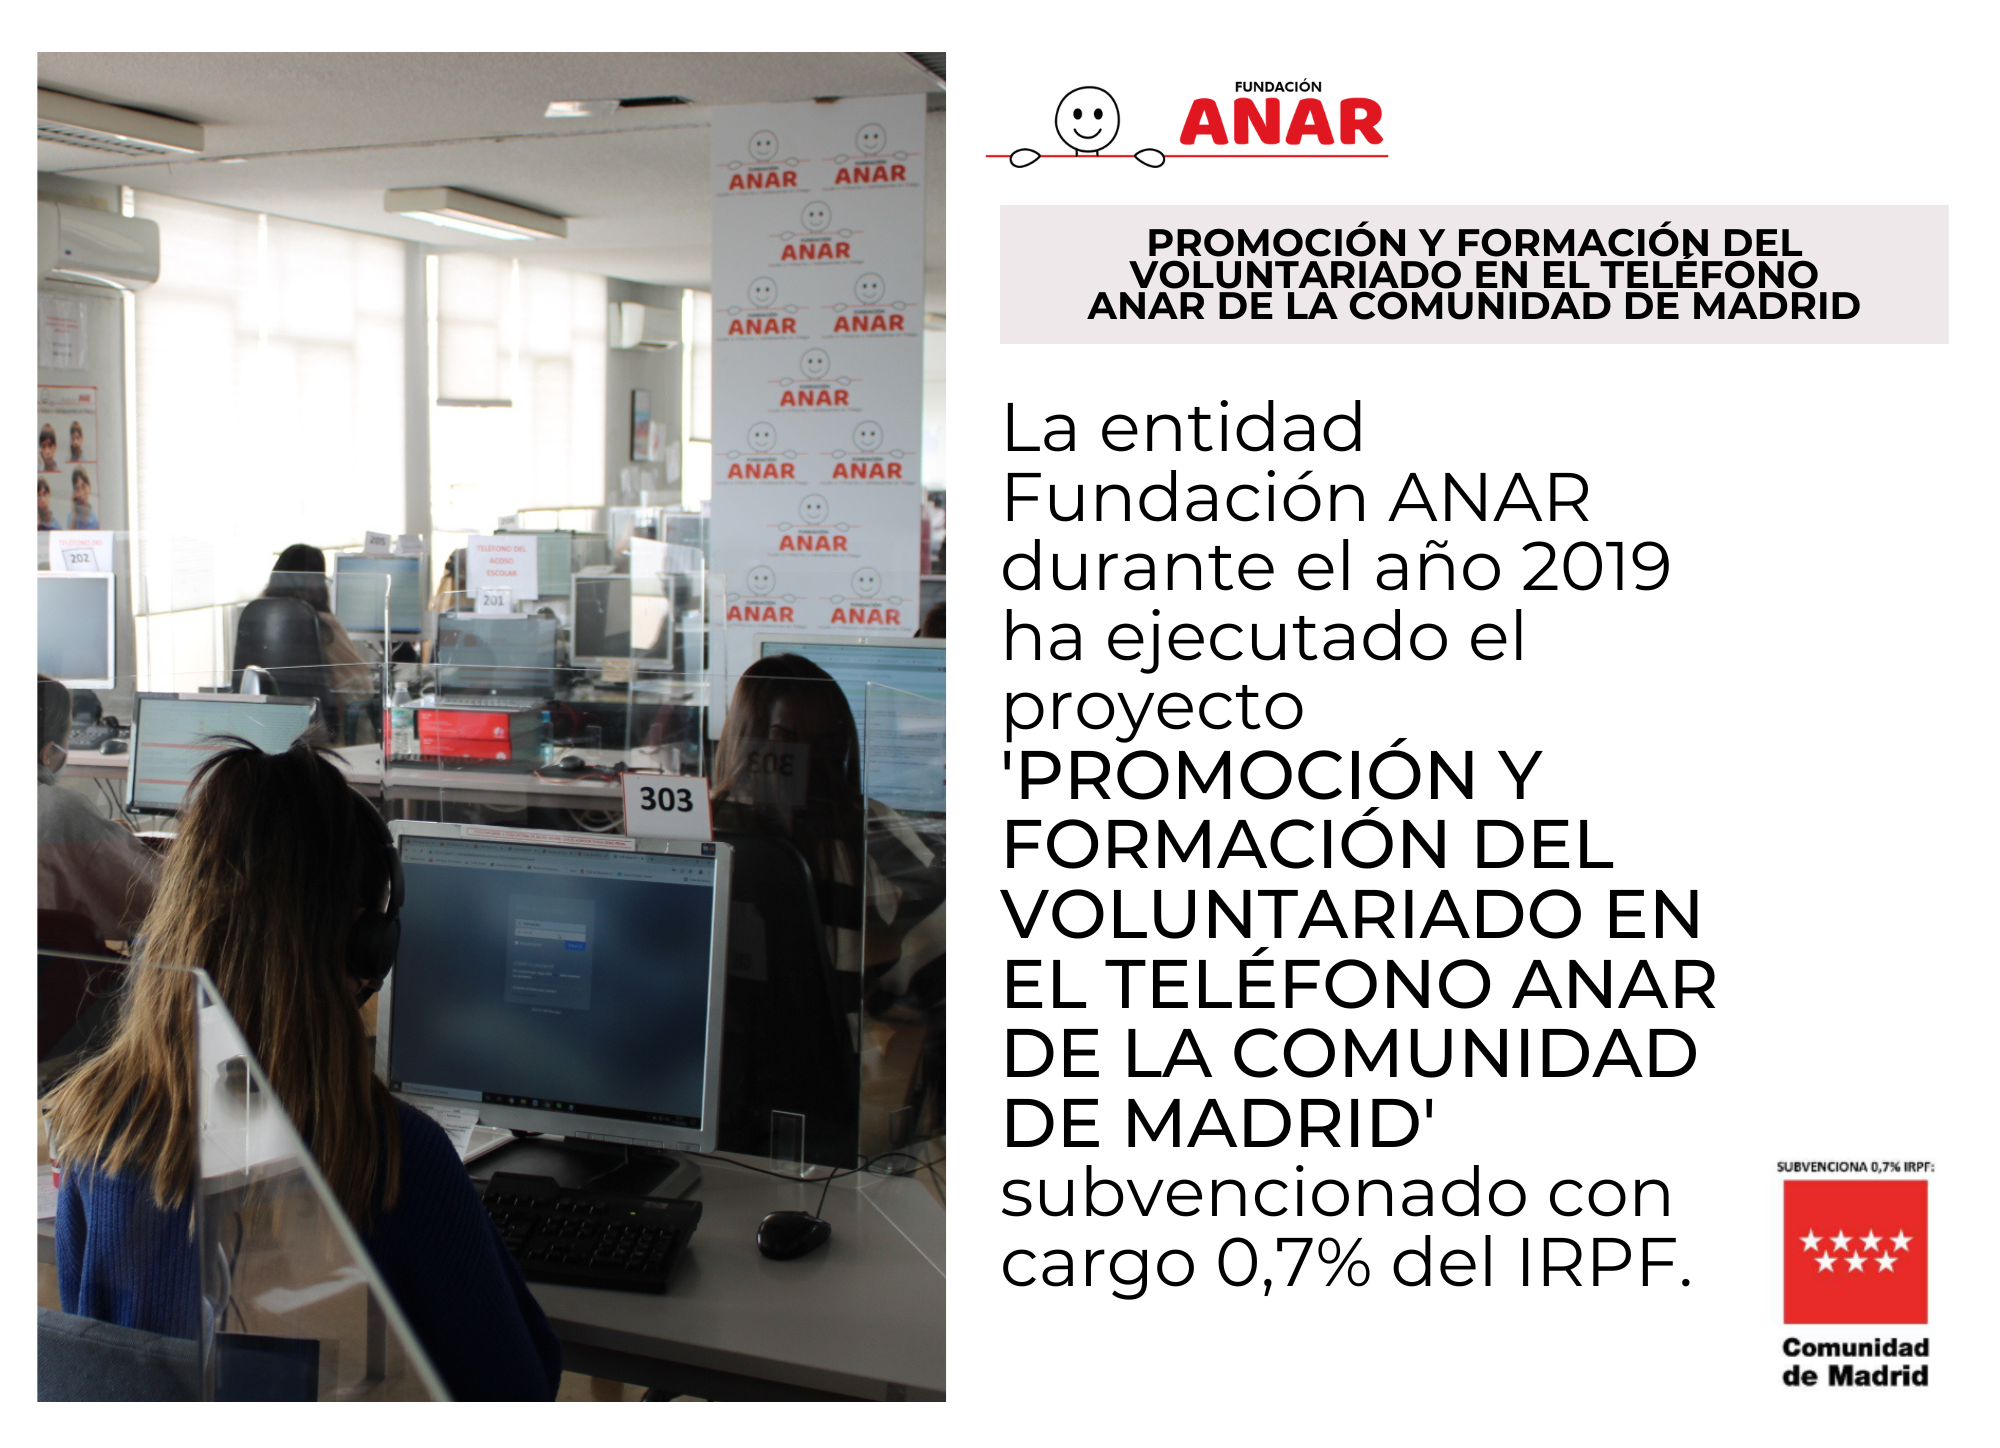 El Teléfono ANAR, subvencionado por la Comunidad de Madrid